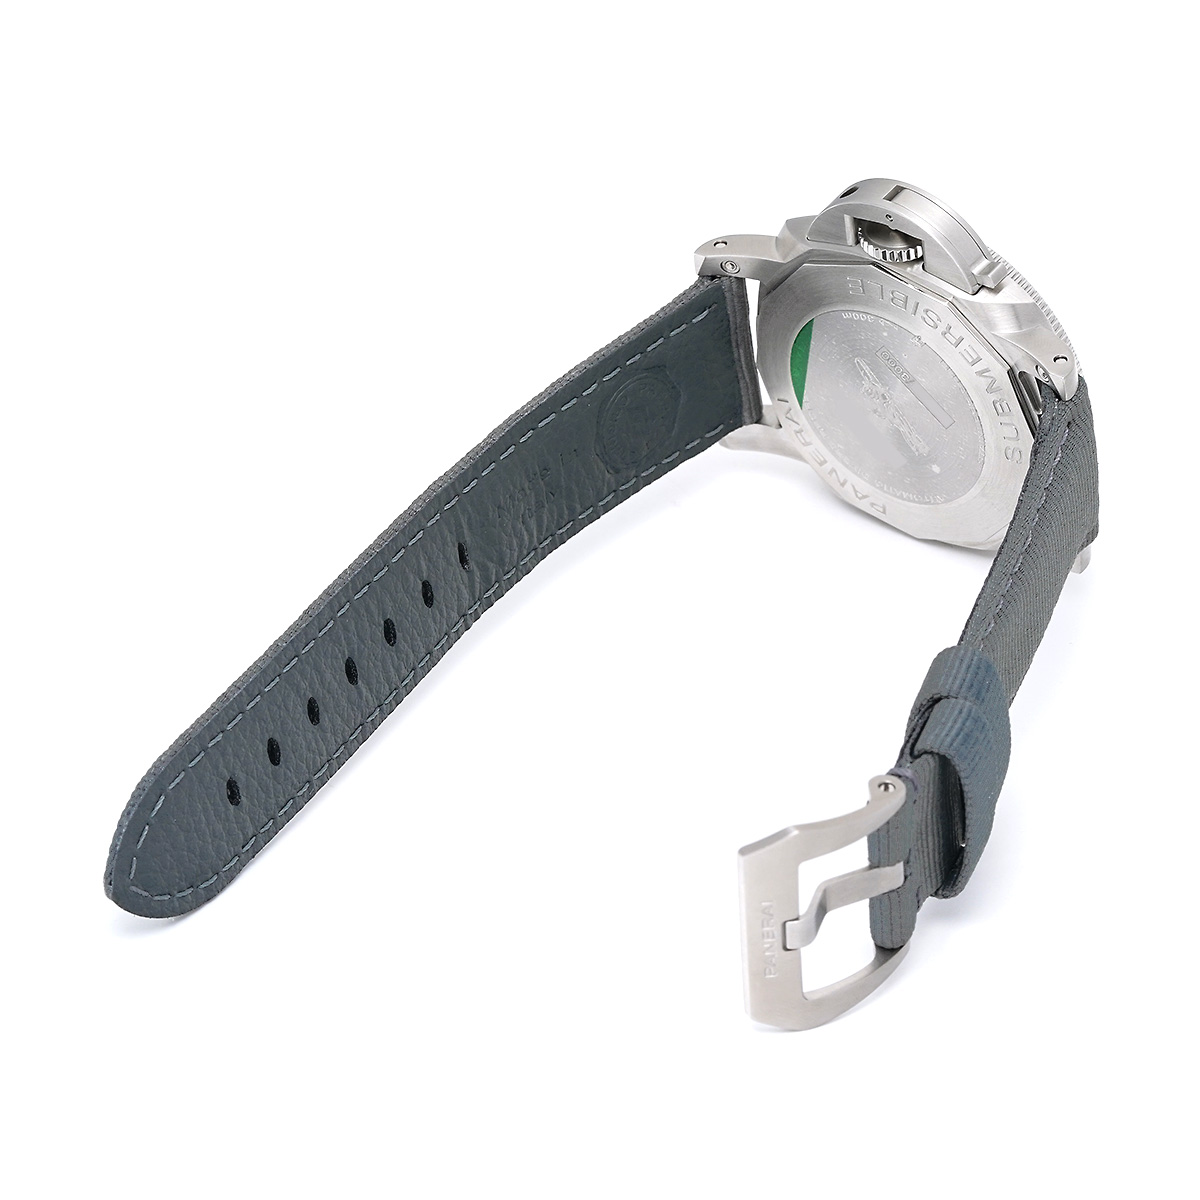 パネライ PANERAI PAM02683 Y番(2022年製造) ブラック メンズ 腕時計